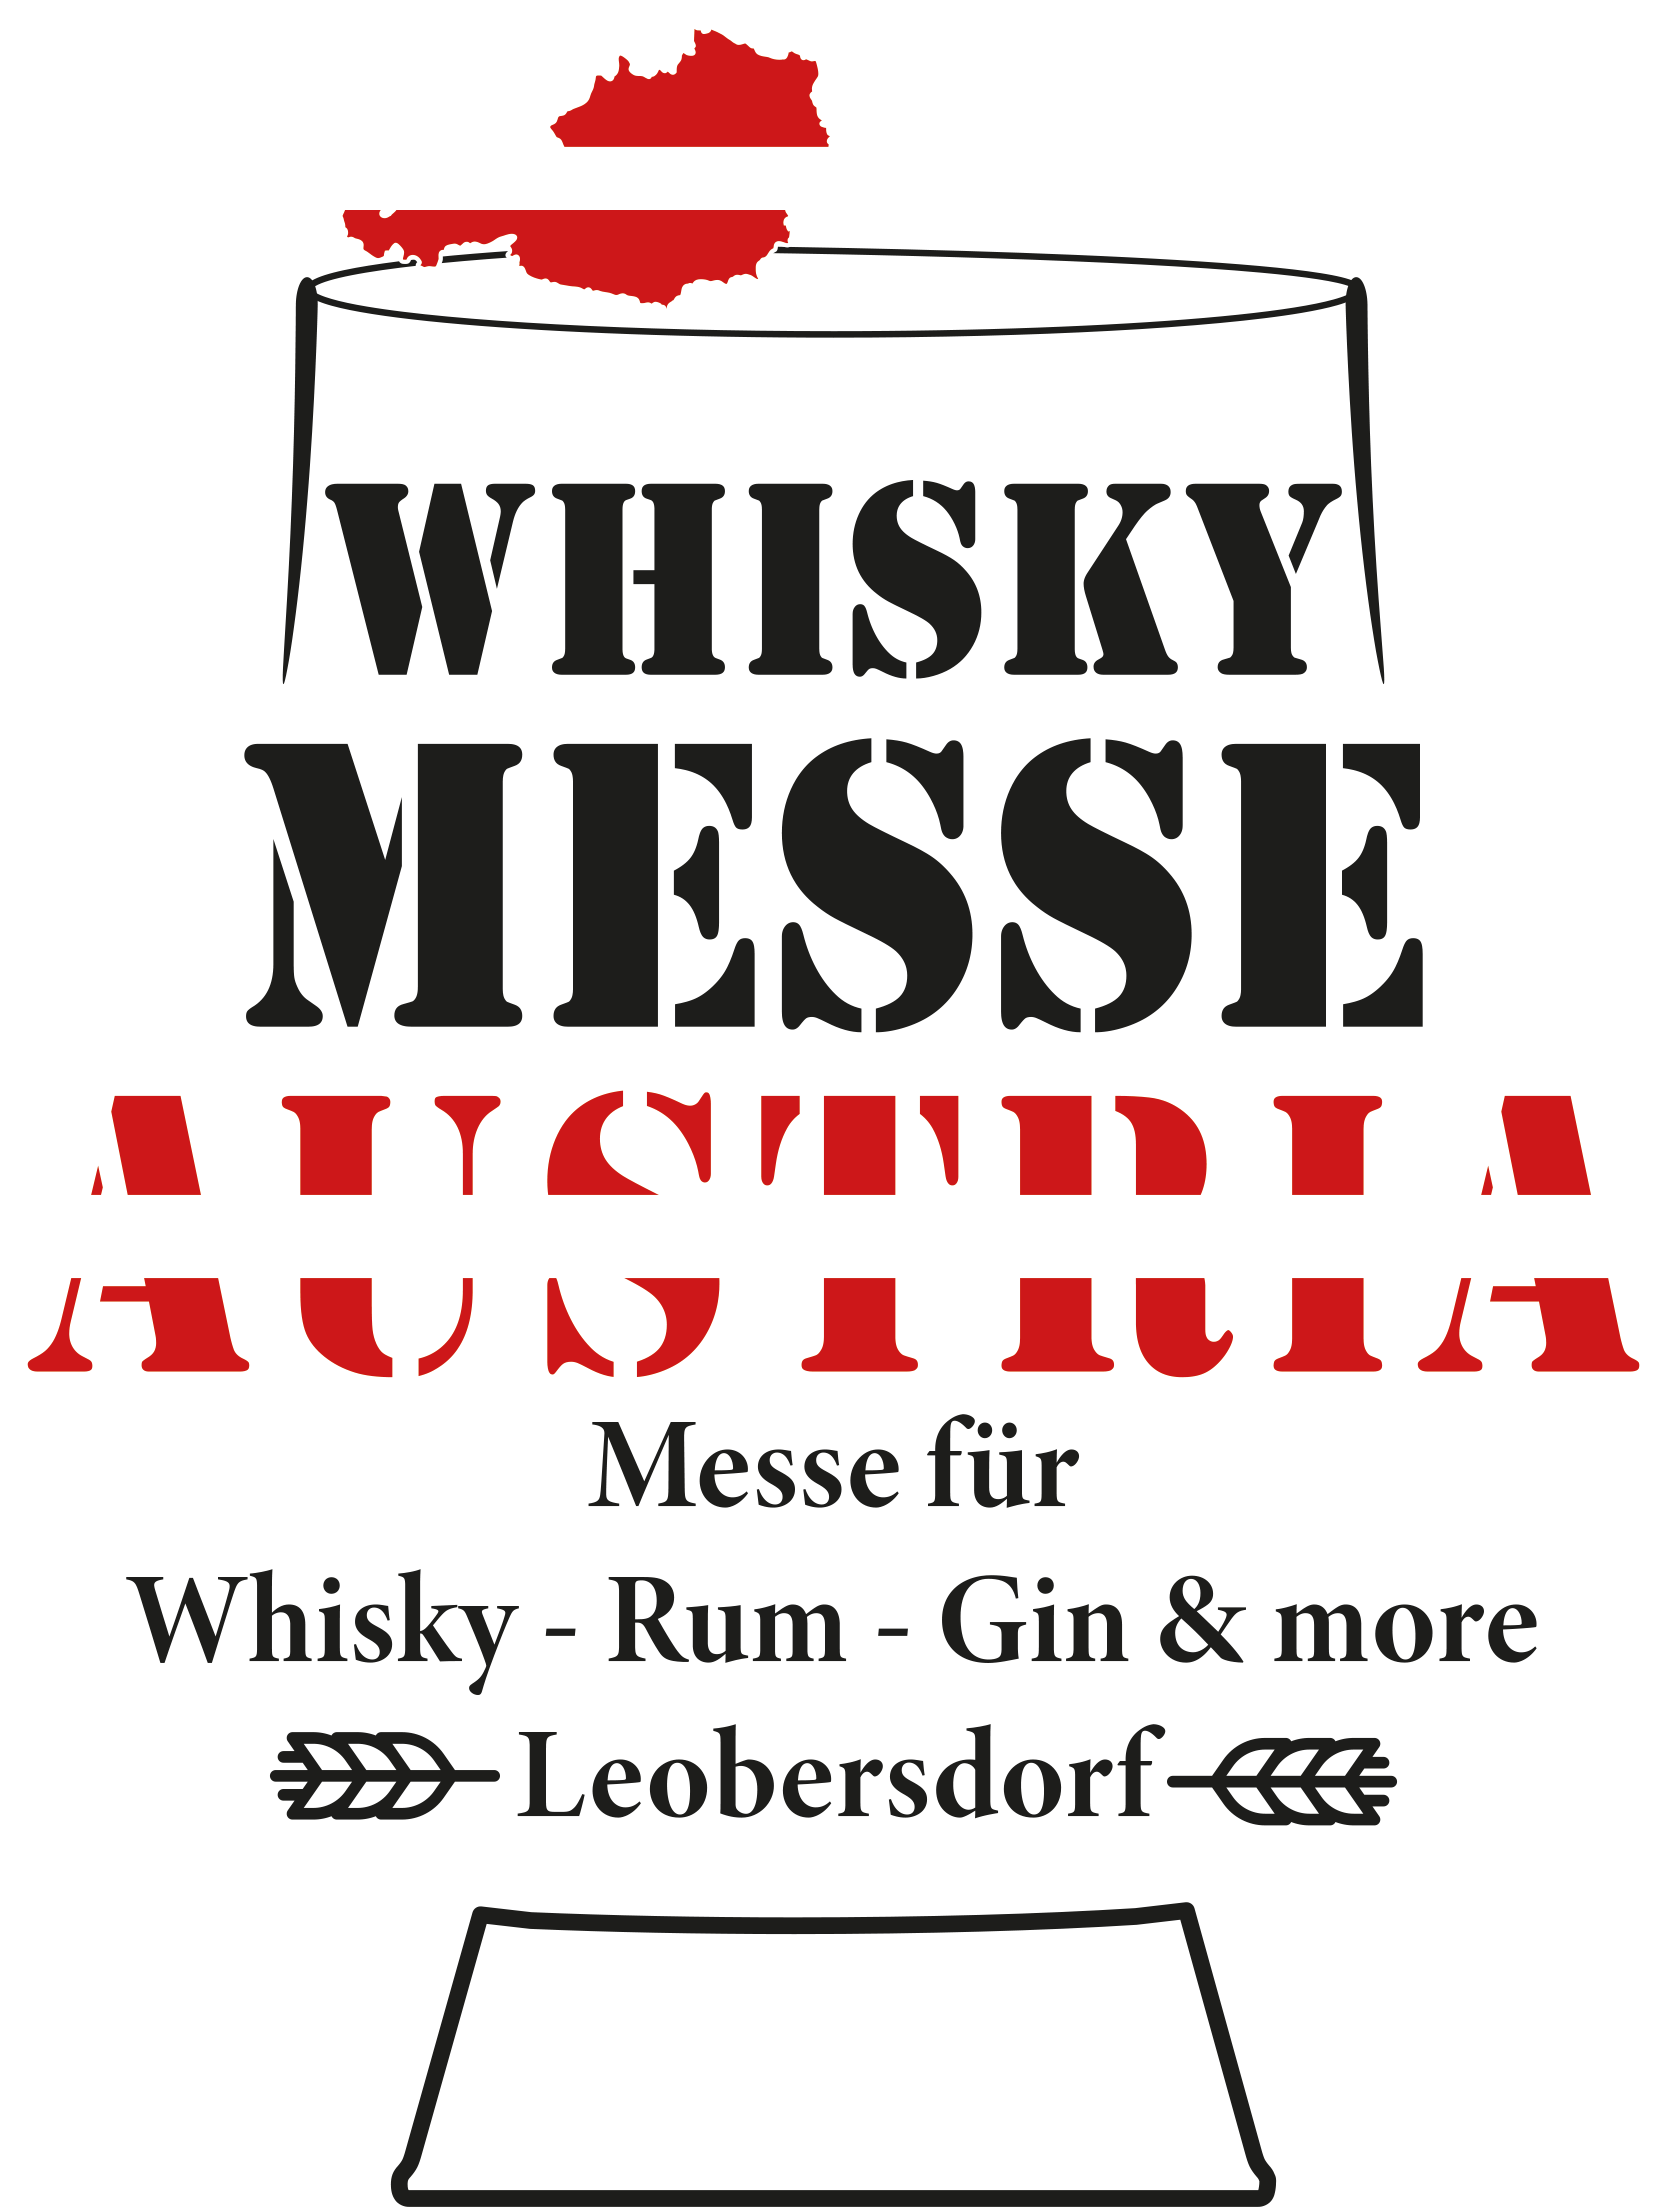 Whisky Messe Austria